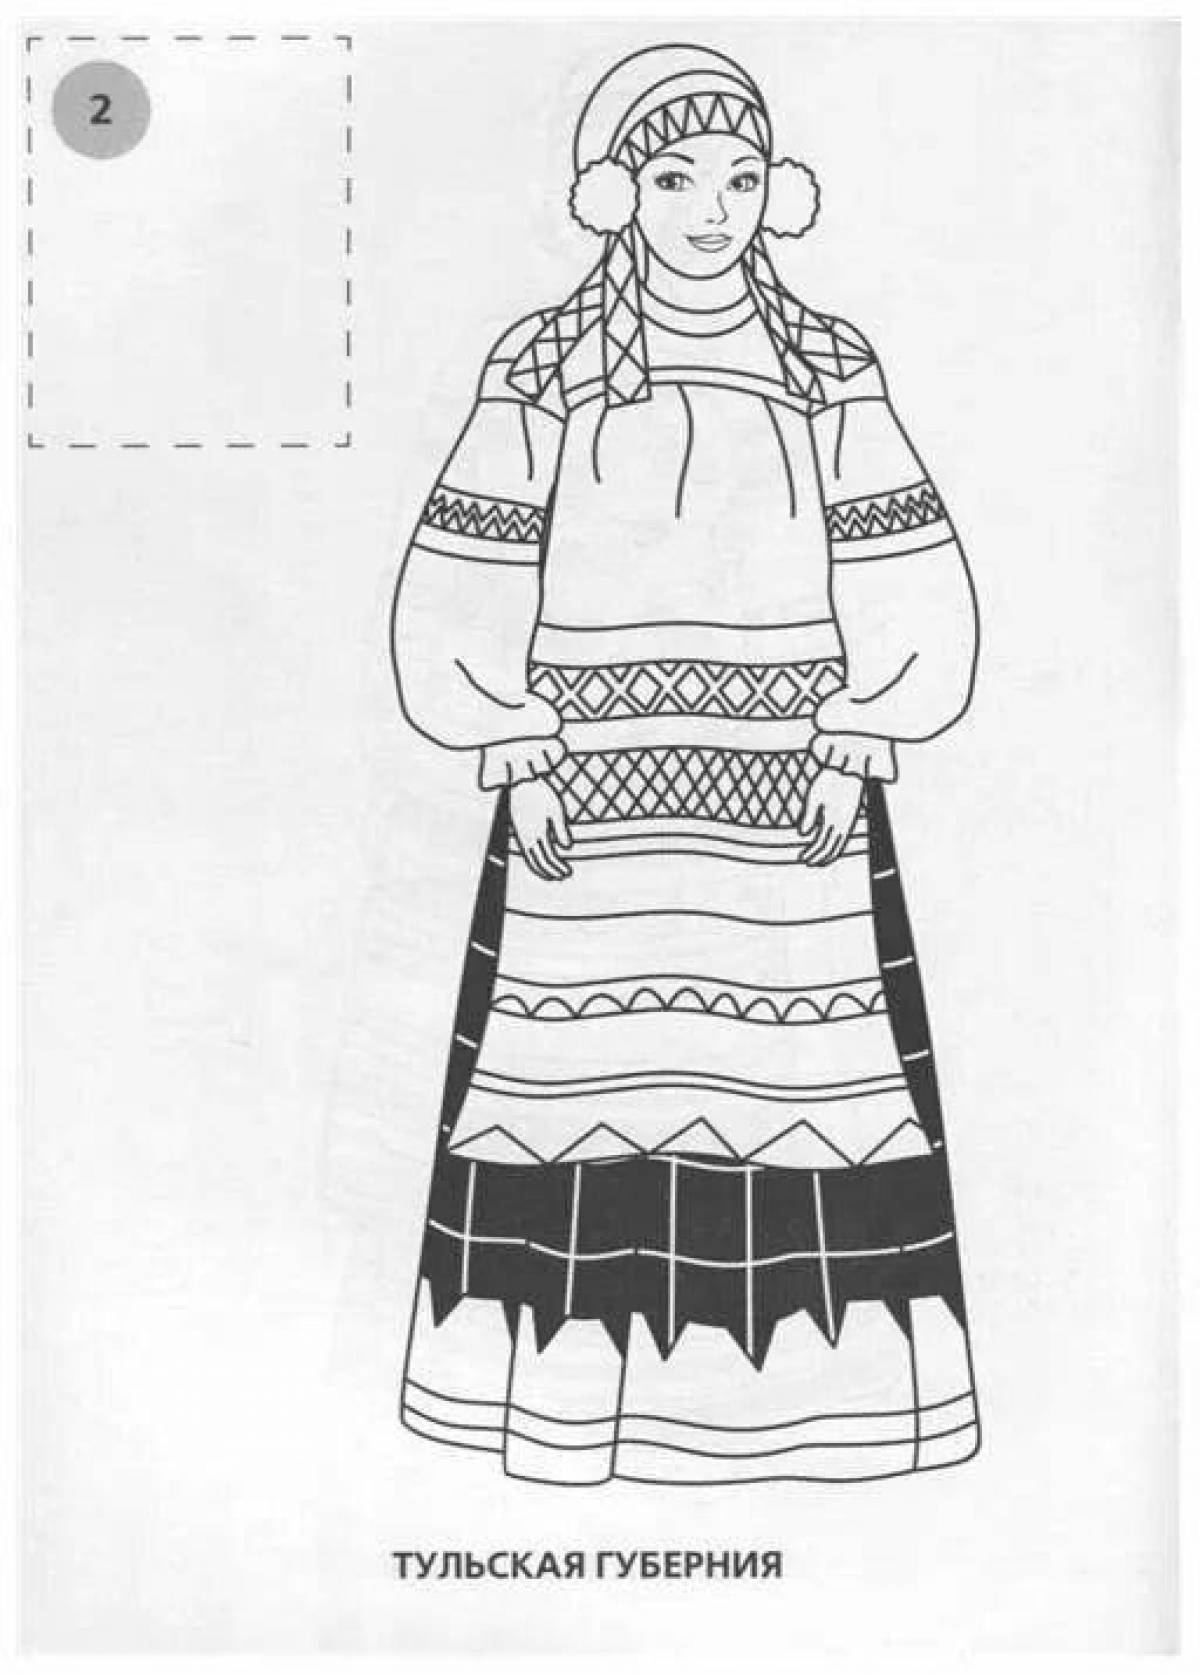 Intriguing Russian women's folk costume